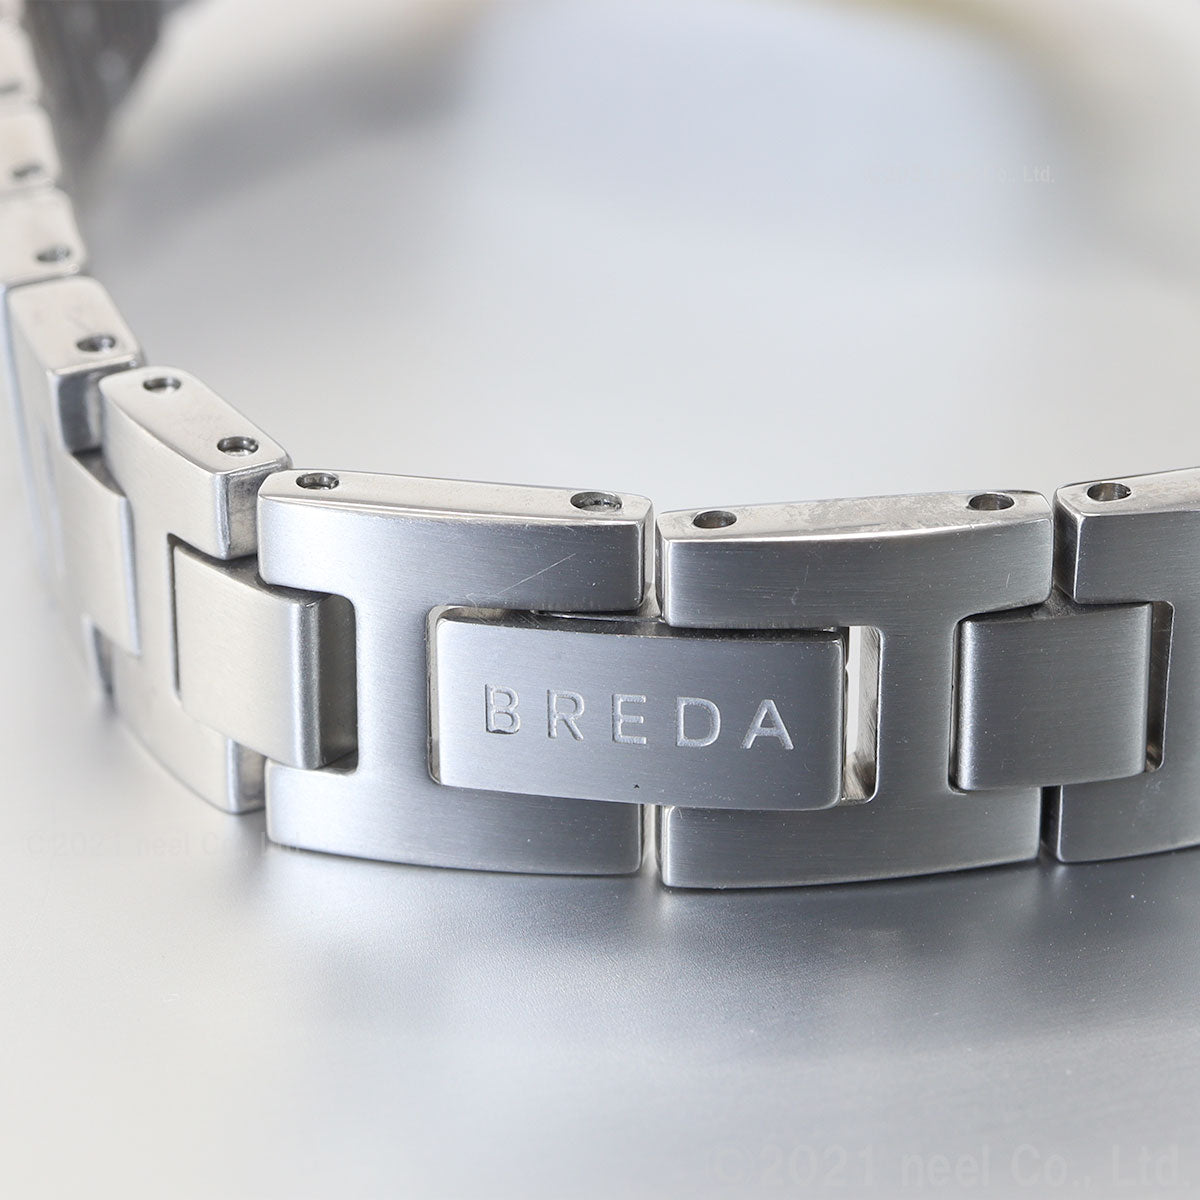 ブレダ BREDA × HARIO Lampwork Factory ハリオ コラボ 限定モデル 腕時計 レディース ジェーン JANE 1741h-hh